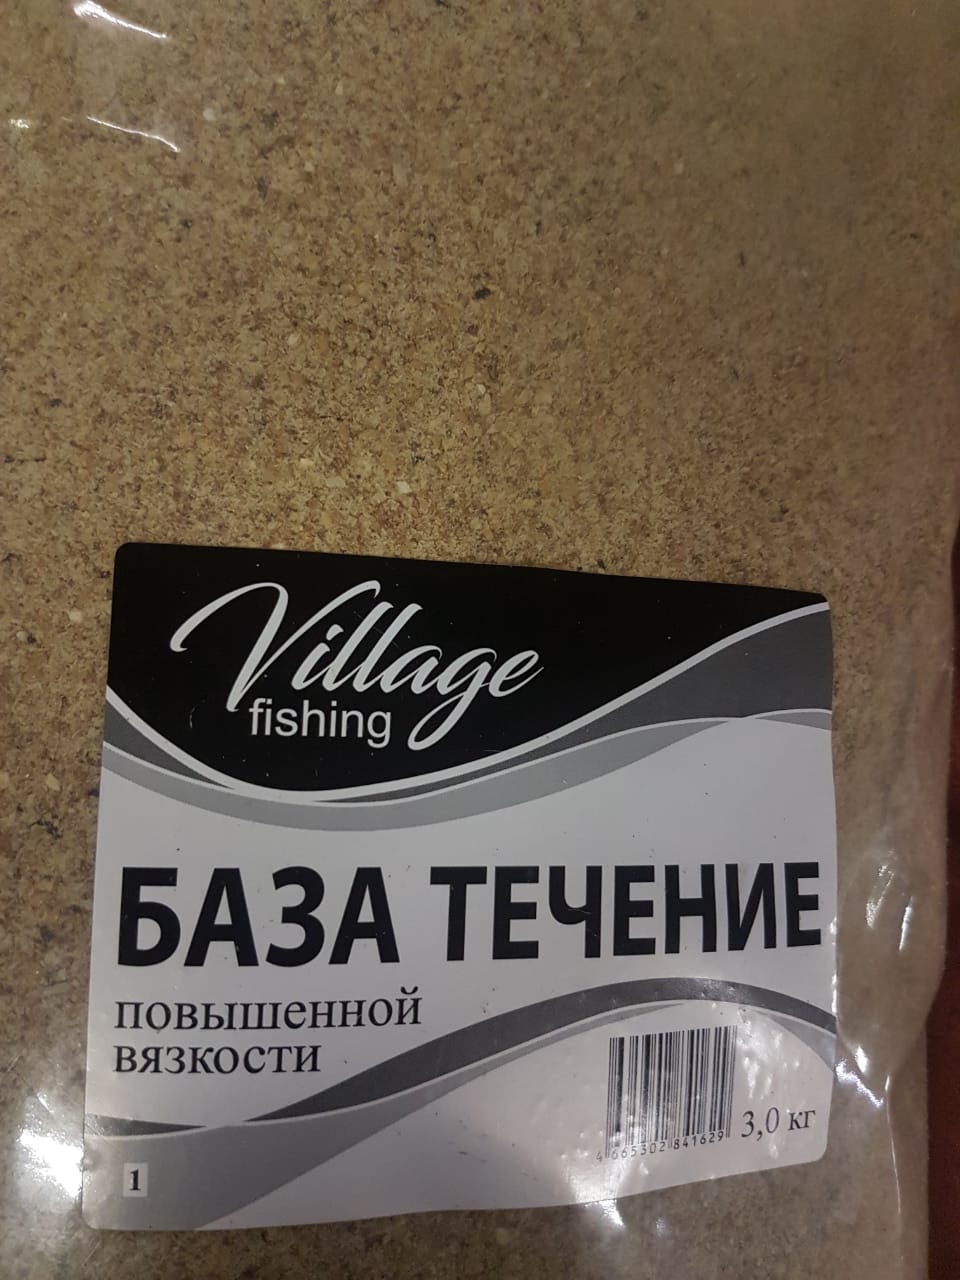 Прикормка Village fishing Лайт База течение 3 кг.